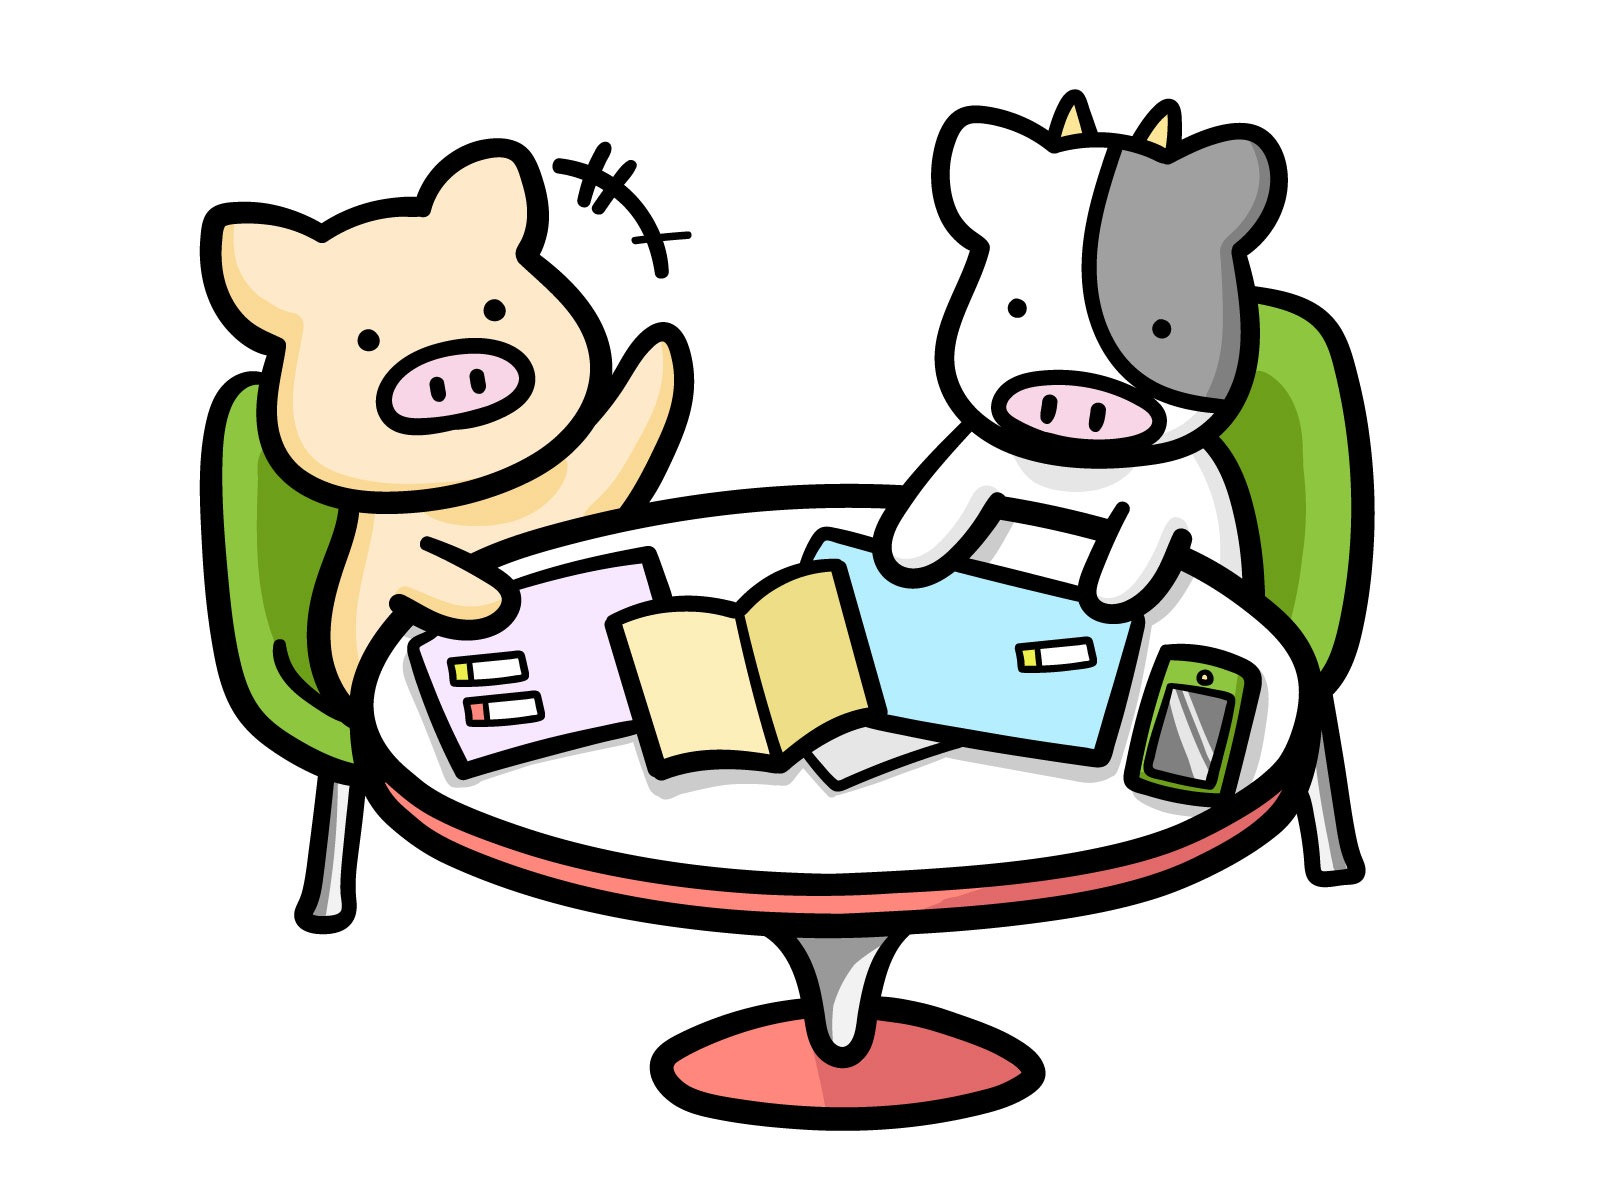 牛さんと馬さんが机を囲んで楽しそうに話しているイラストです